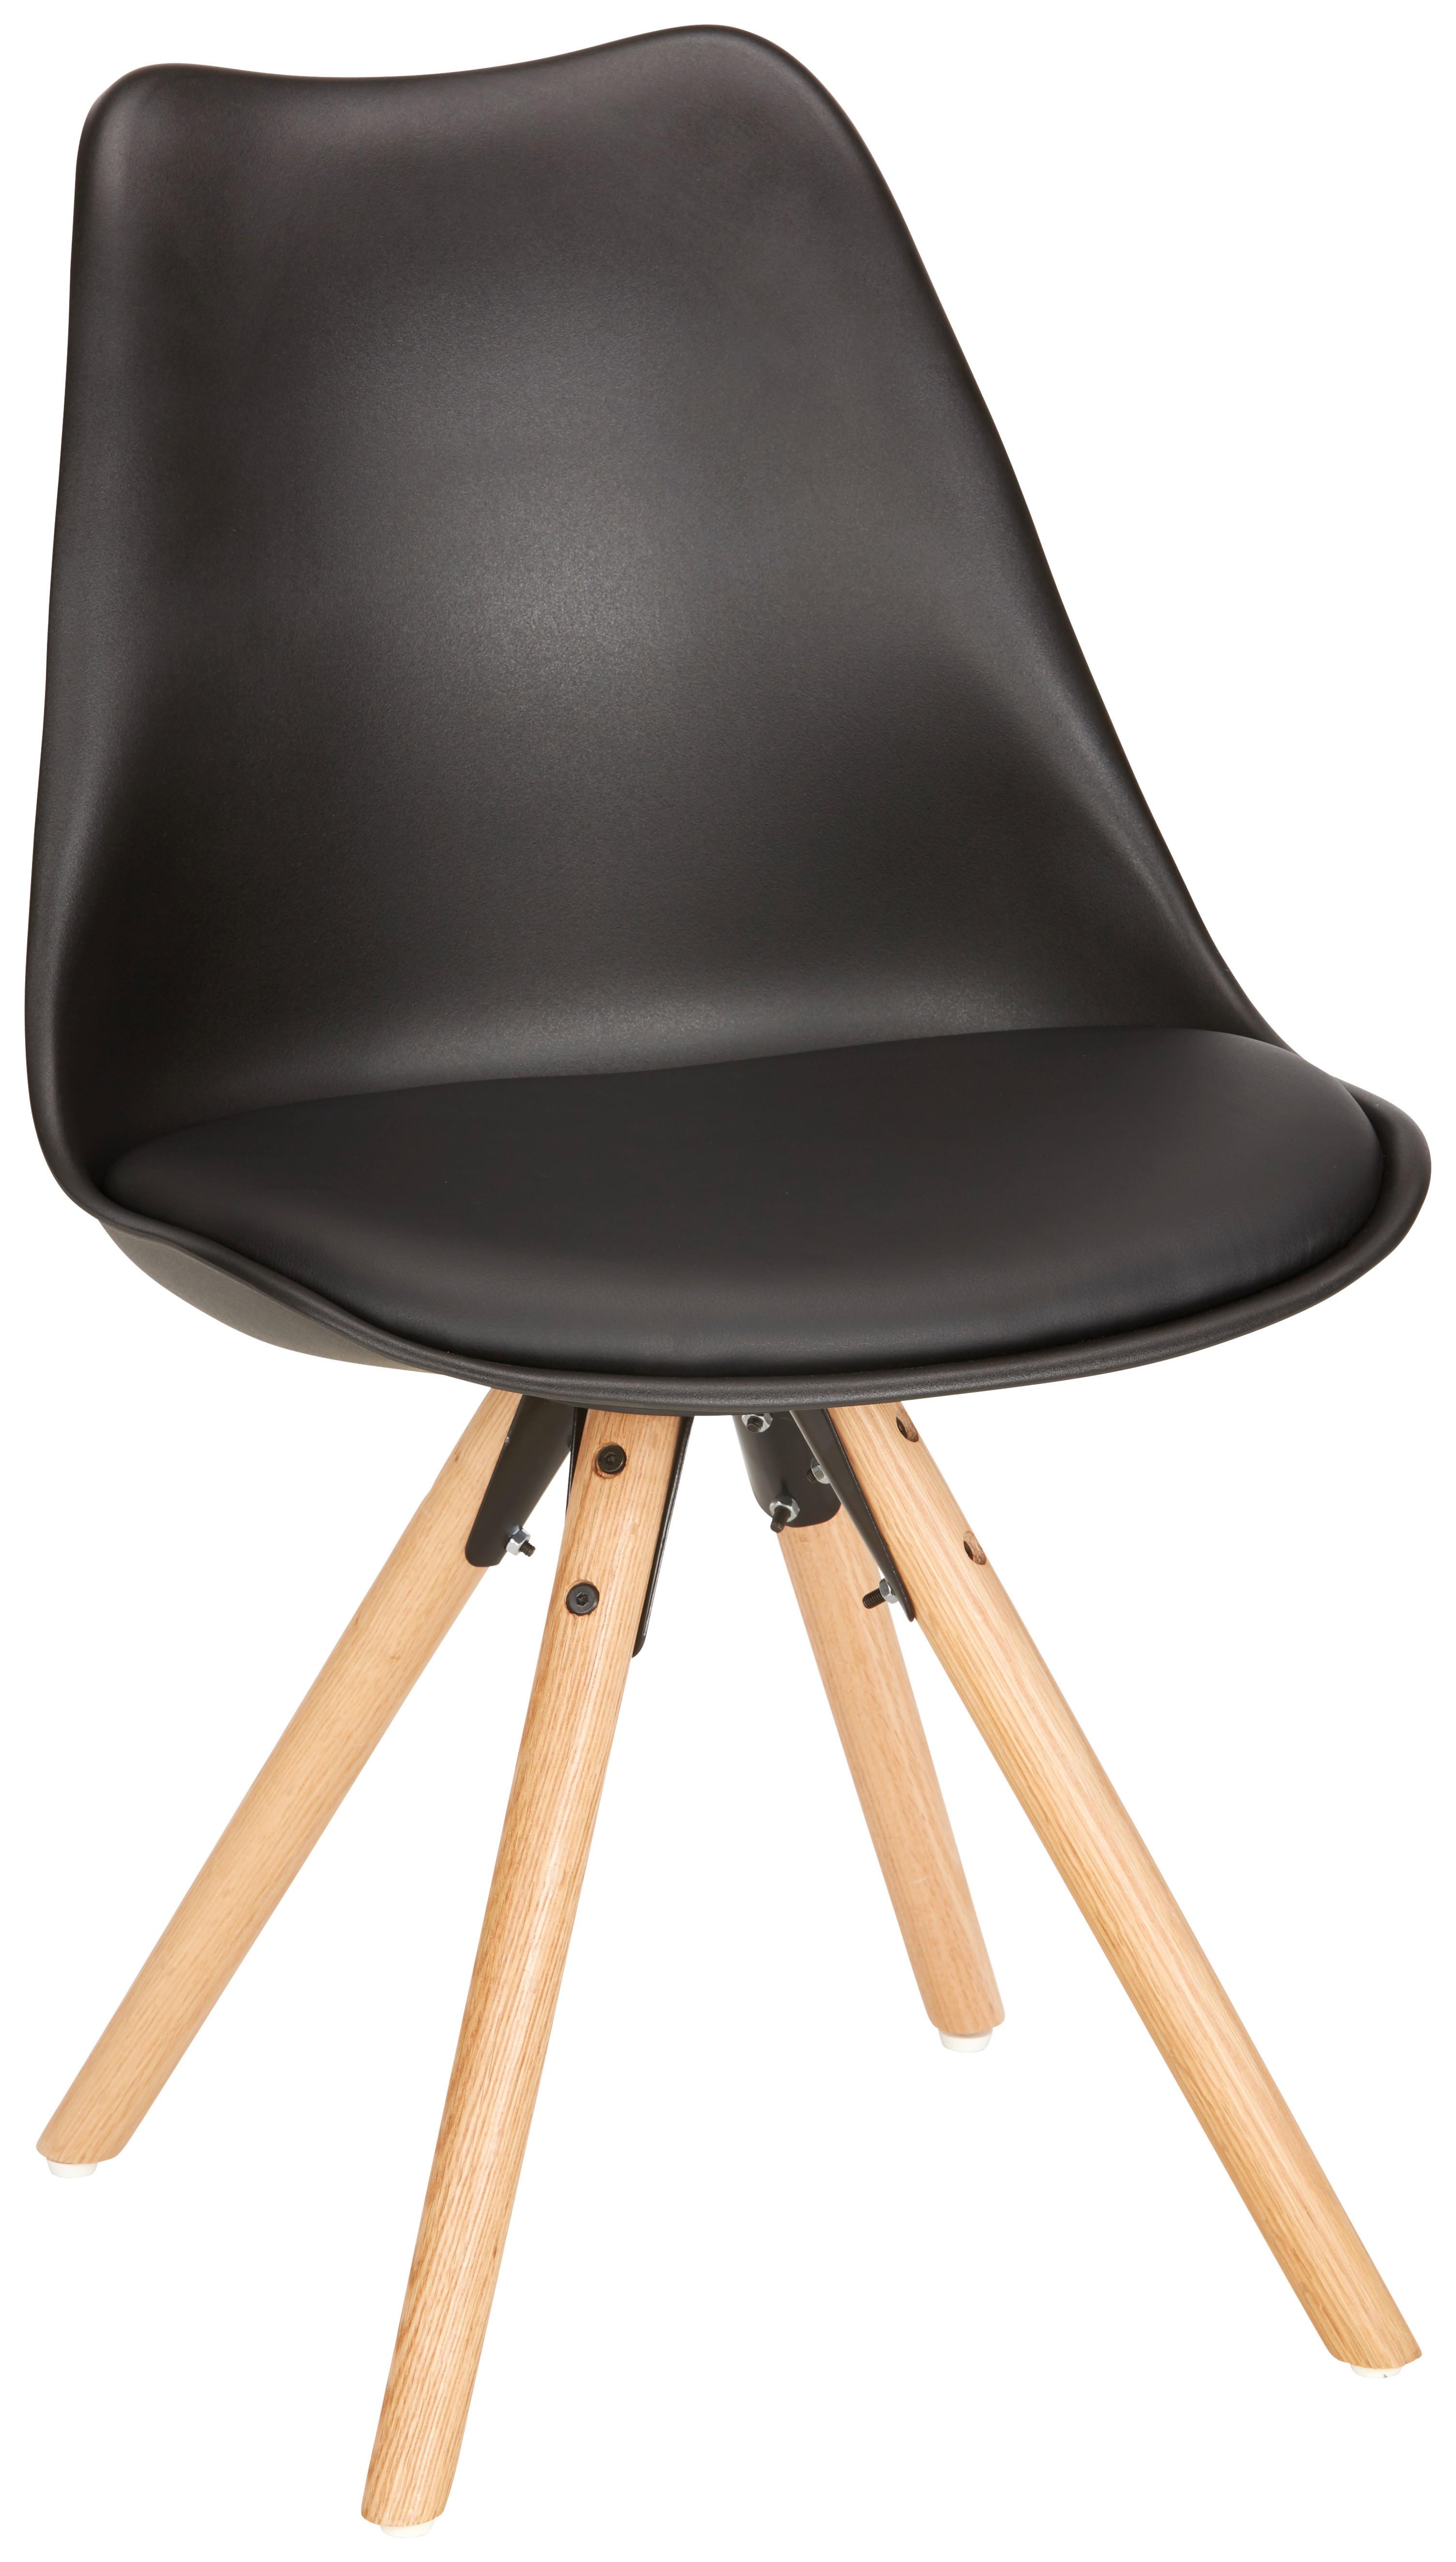 Stuhl in Schwarz - Eichefarben/Schwarz, MODERN, Holz/Kunststoff (48/81/57cm) - Based